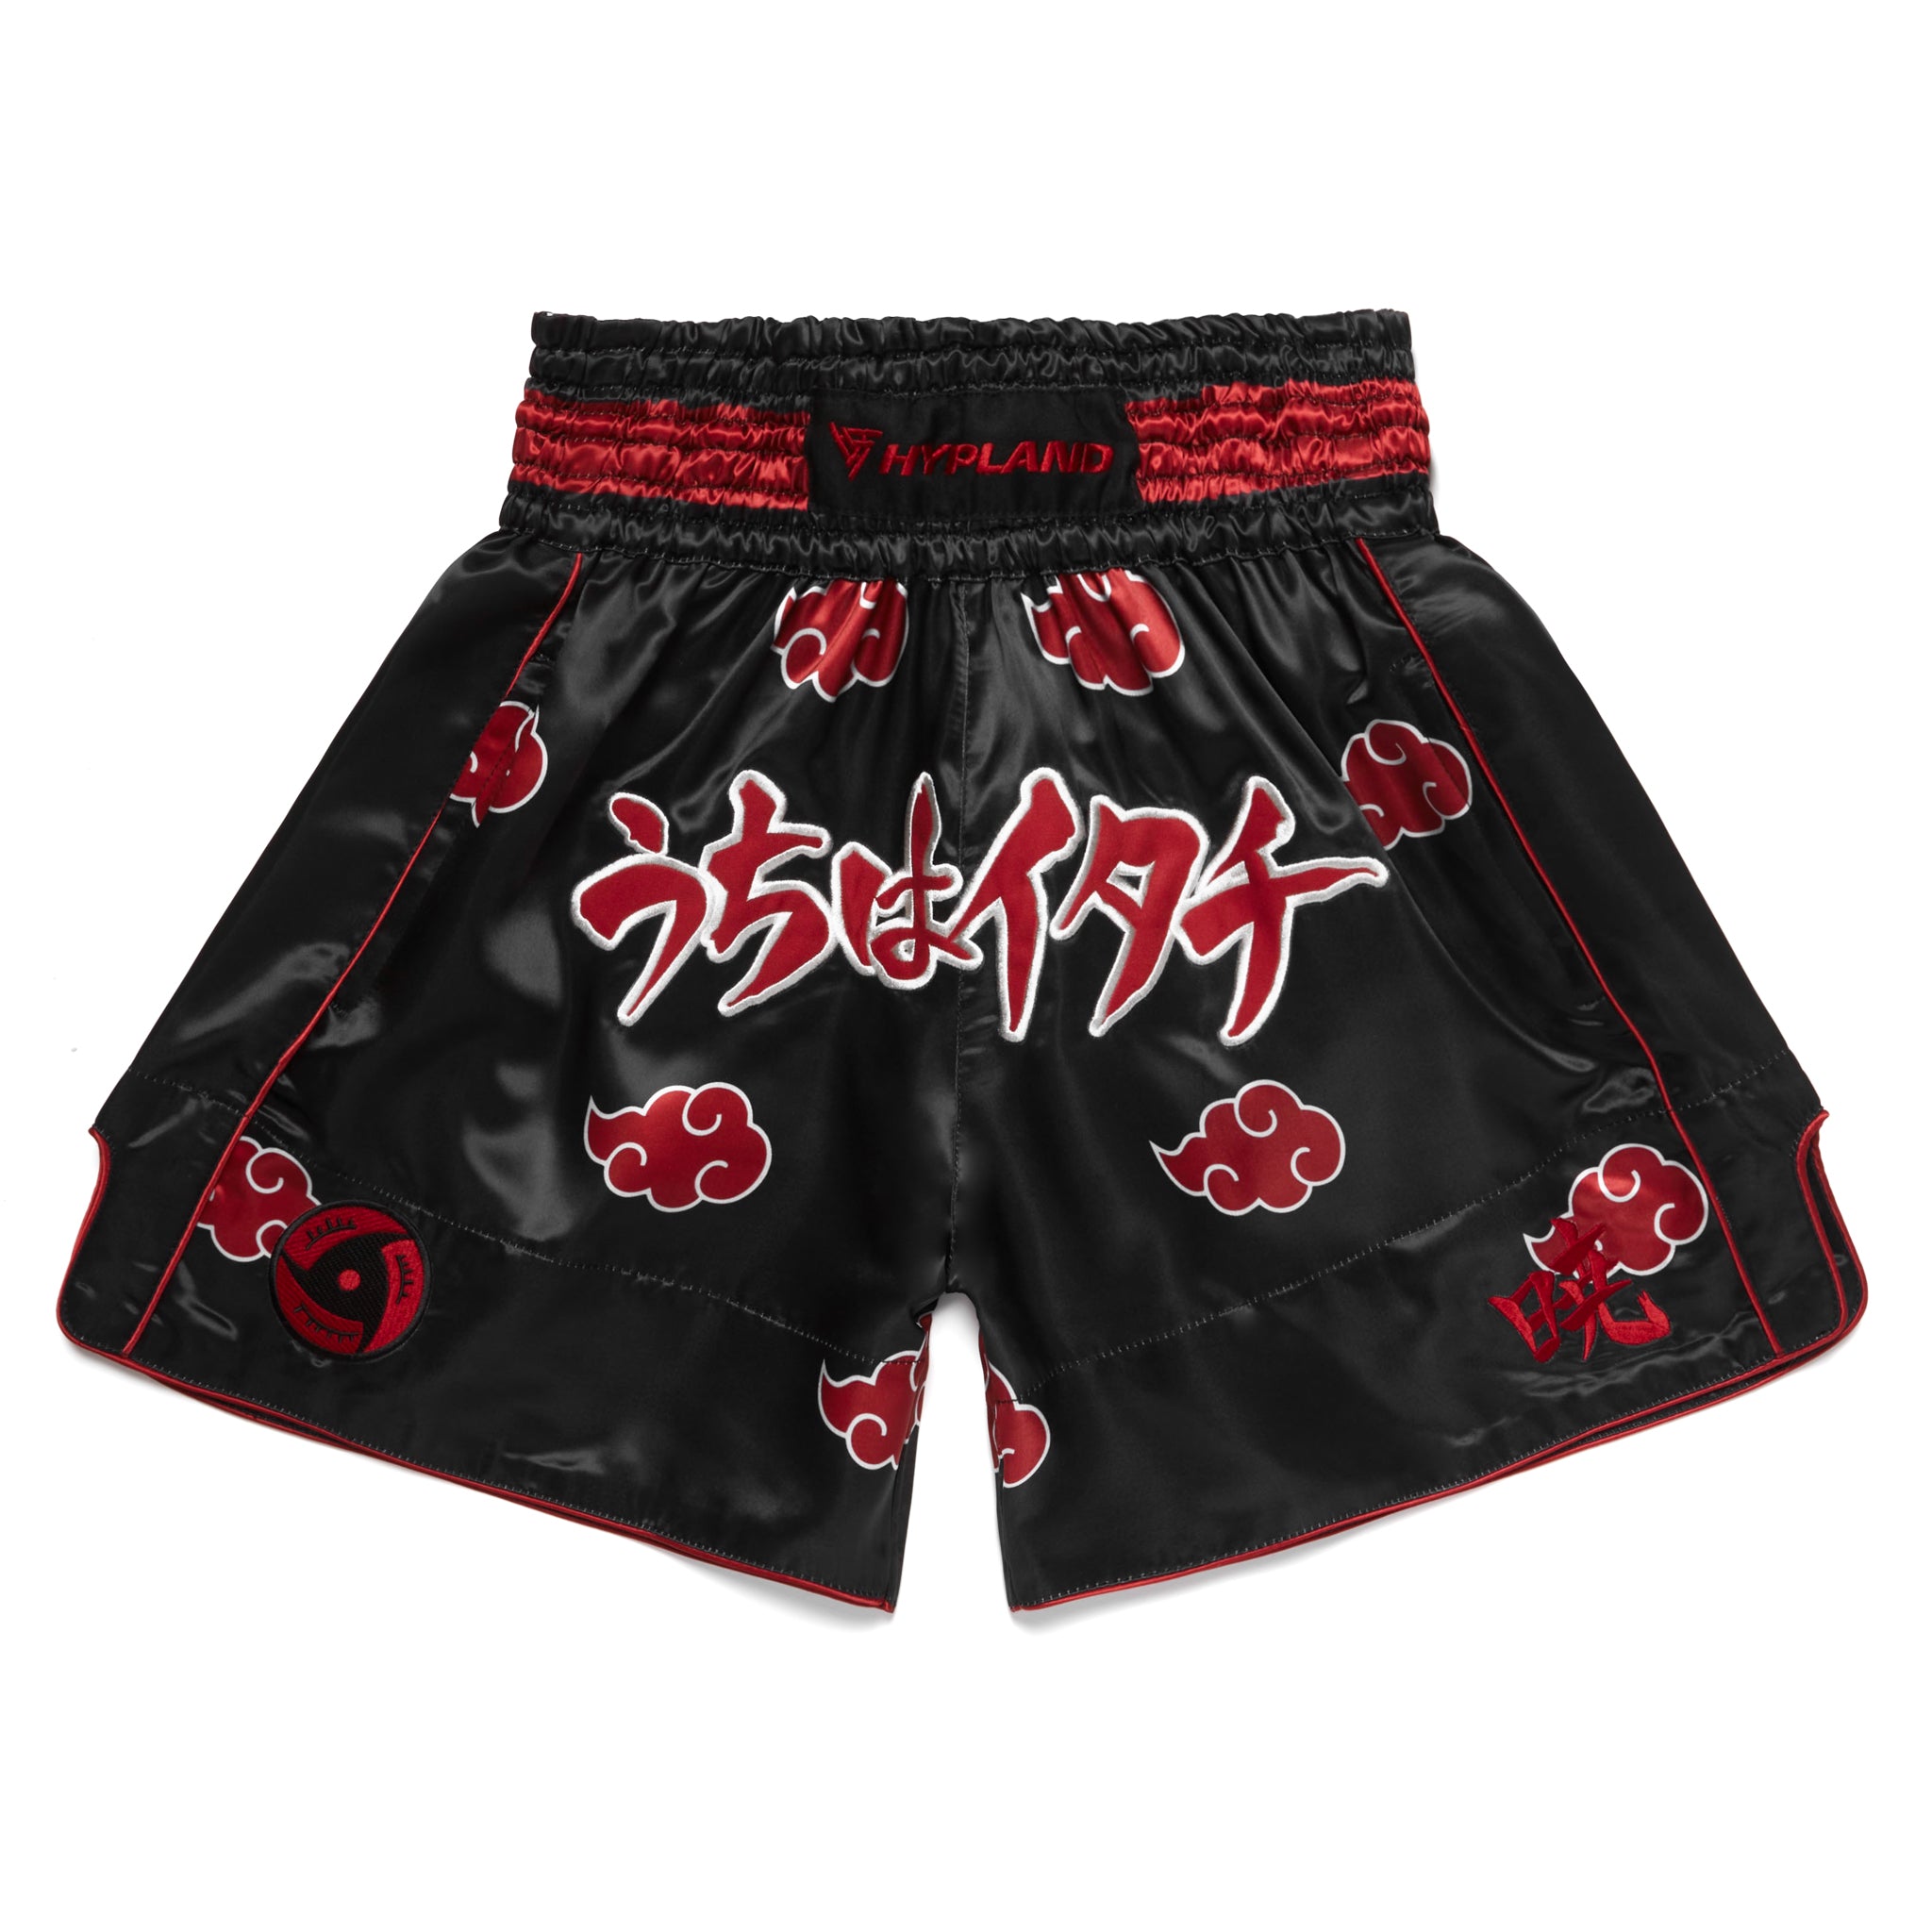 Piru Muay Thai Shorts - Black | GorillaWearUsa